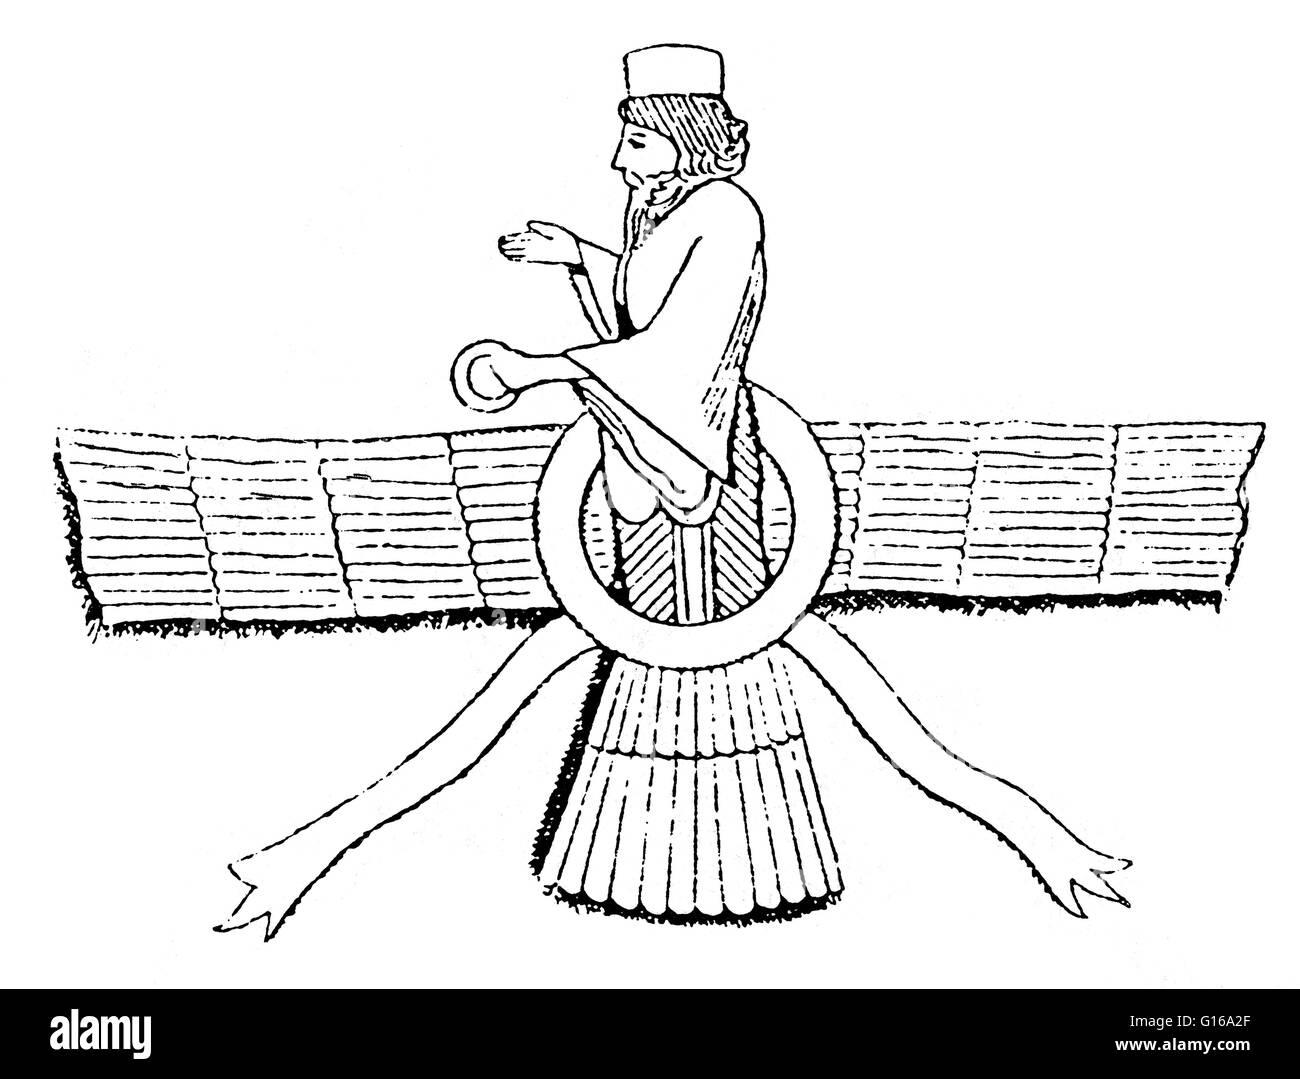 Ahura Mazda è il nome Avestan per una divinità della vecchia religione iraniano che è stato proclamato il Dio increato da Zoroaster, il fondatore di zoroastrismo. Ahura Mazda è descritta come la più alta divinità di culto in lo zoroastrismo, insieme essendo il f Foto Stock